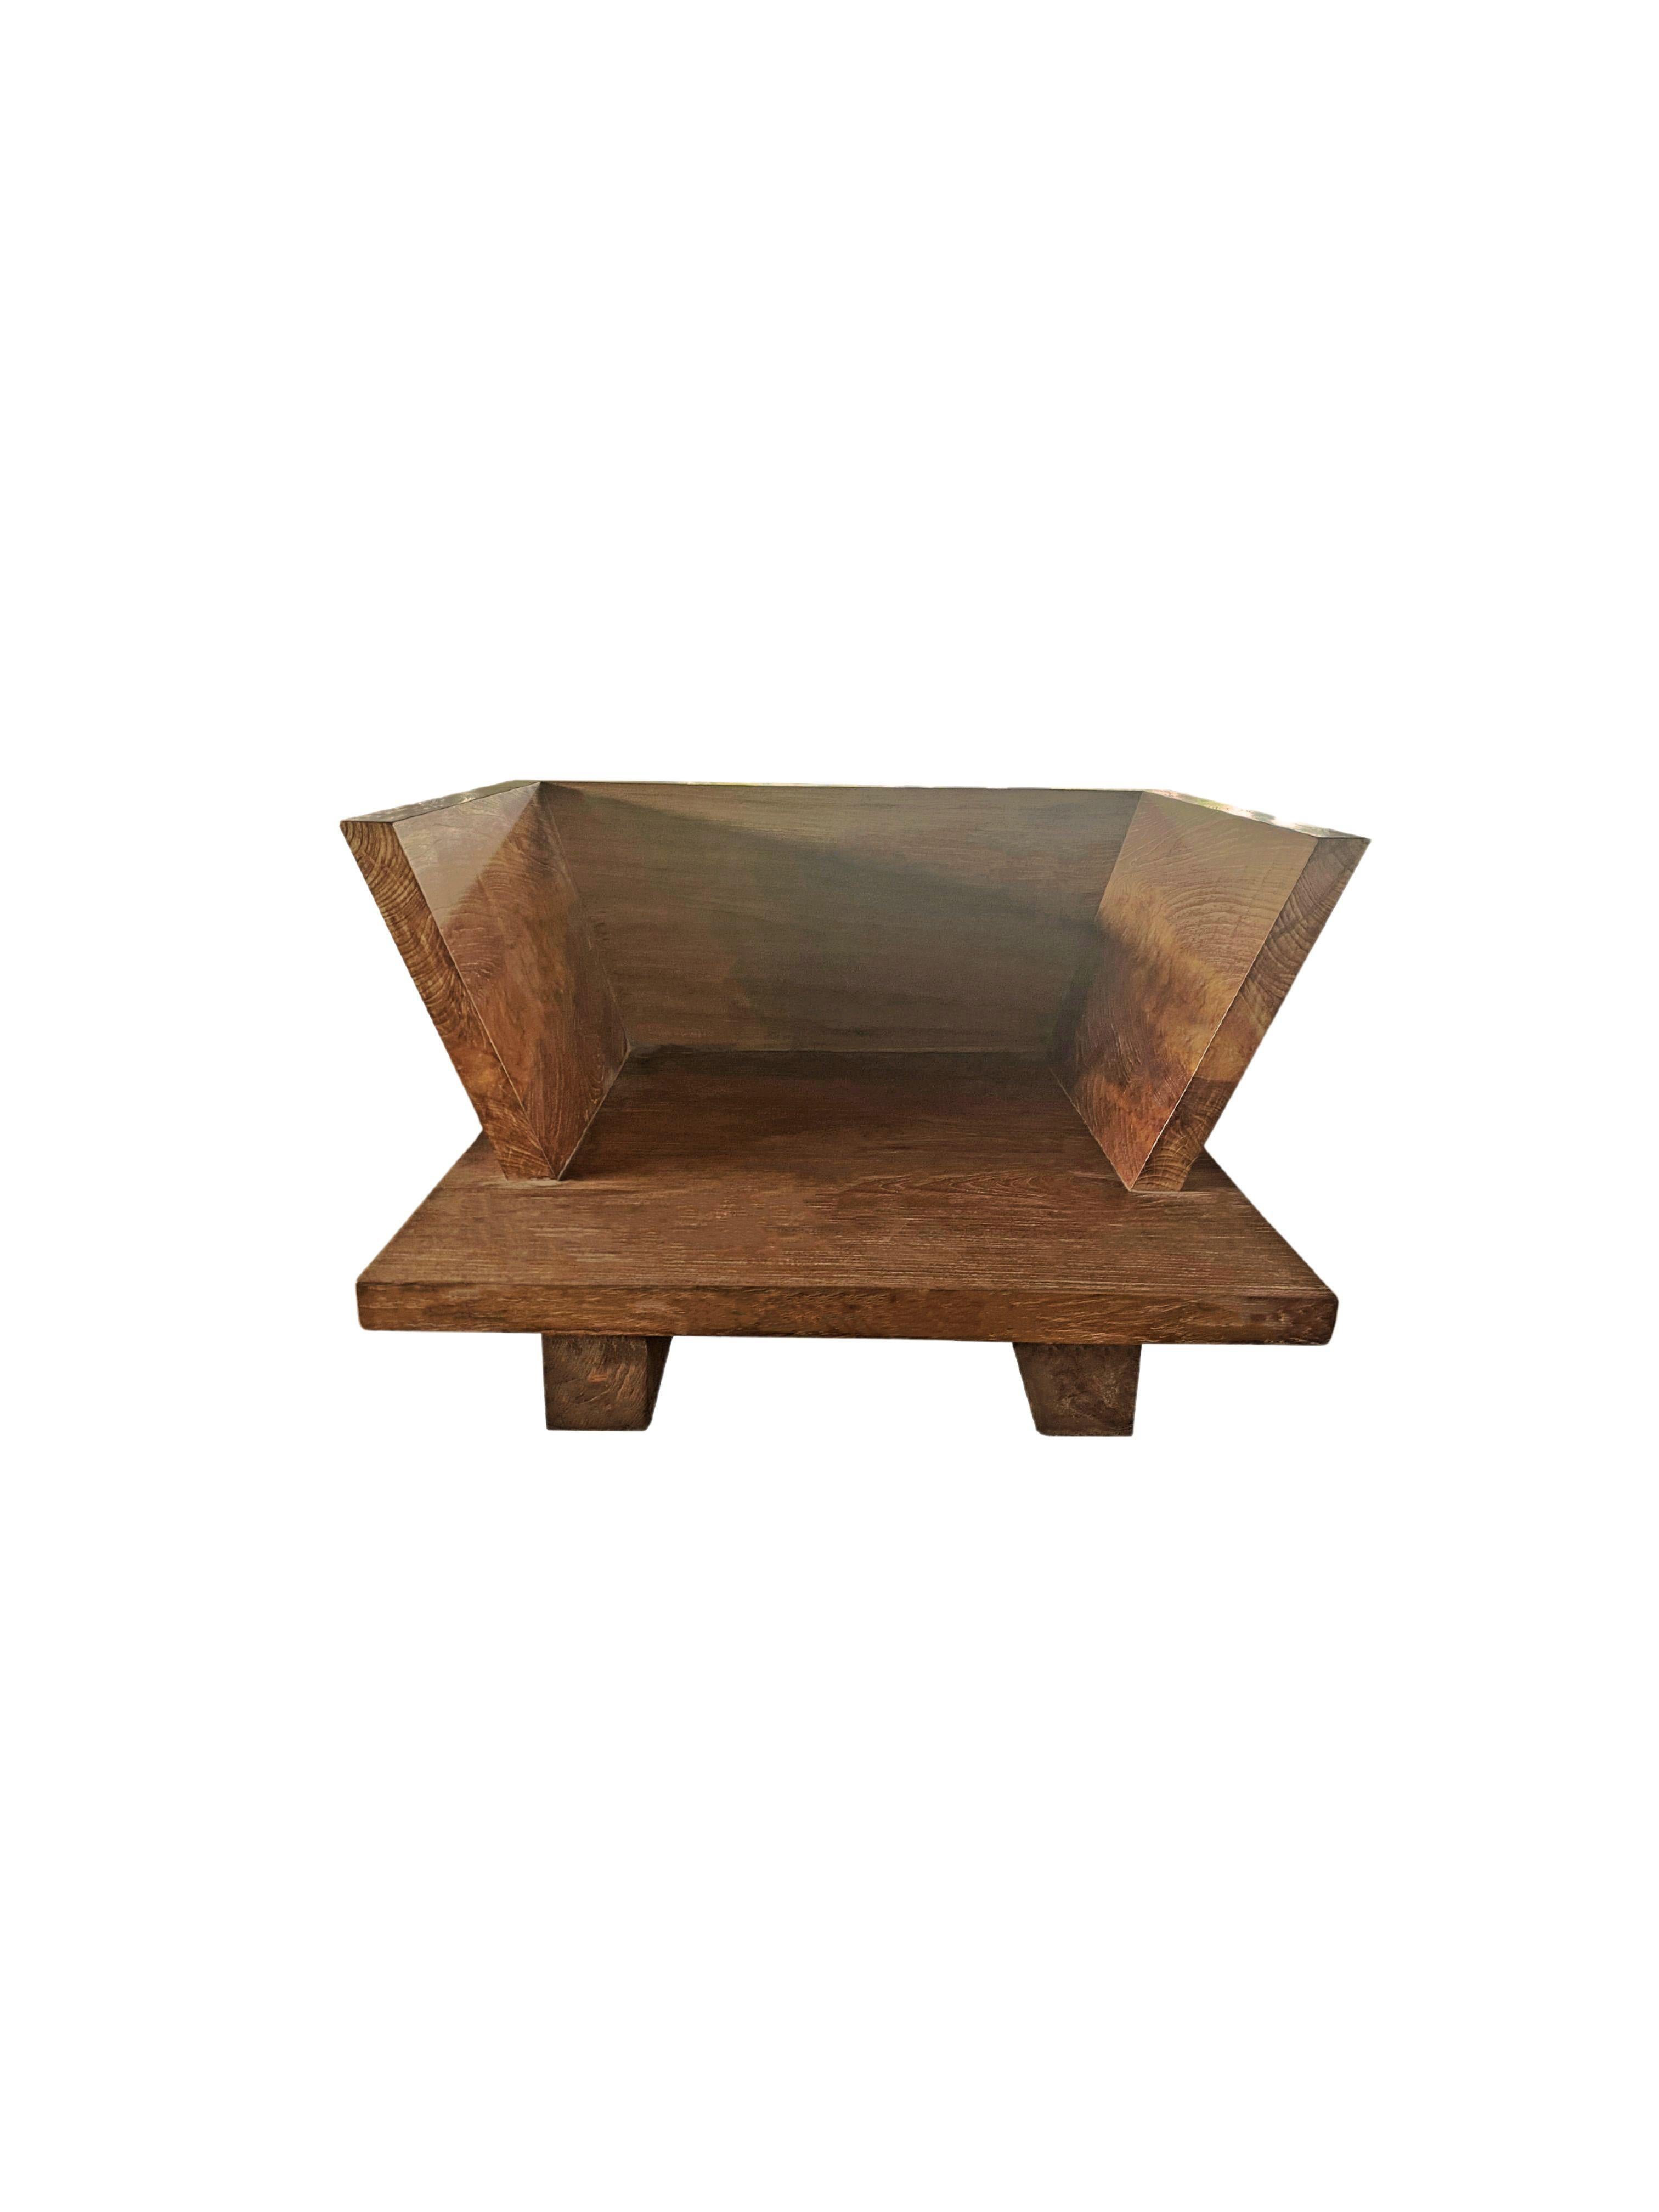 Dieser moderne Teakholzstuhl besteht aus einer großen Teakholzplatte, einer Rückenlehne und wird durch zwei flache Teakholzblöcke erhöht. Dieser Stuhl wird von geschickten Kunsthandwerkern in Indonesien hergestellt. Die klare Form und das